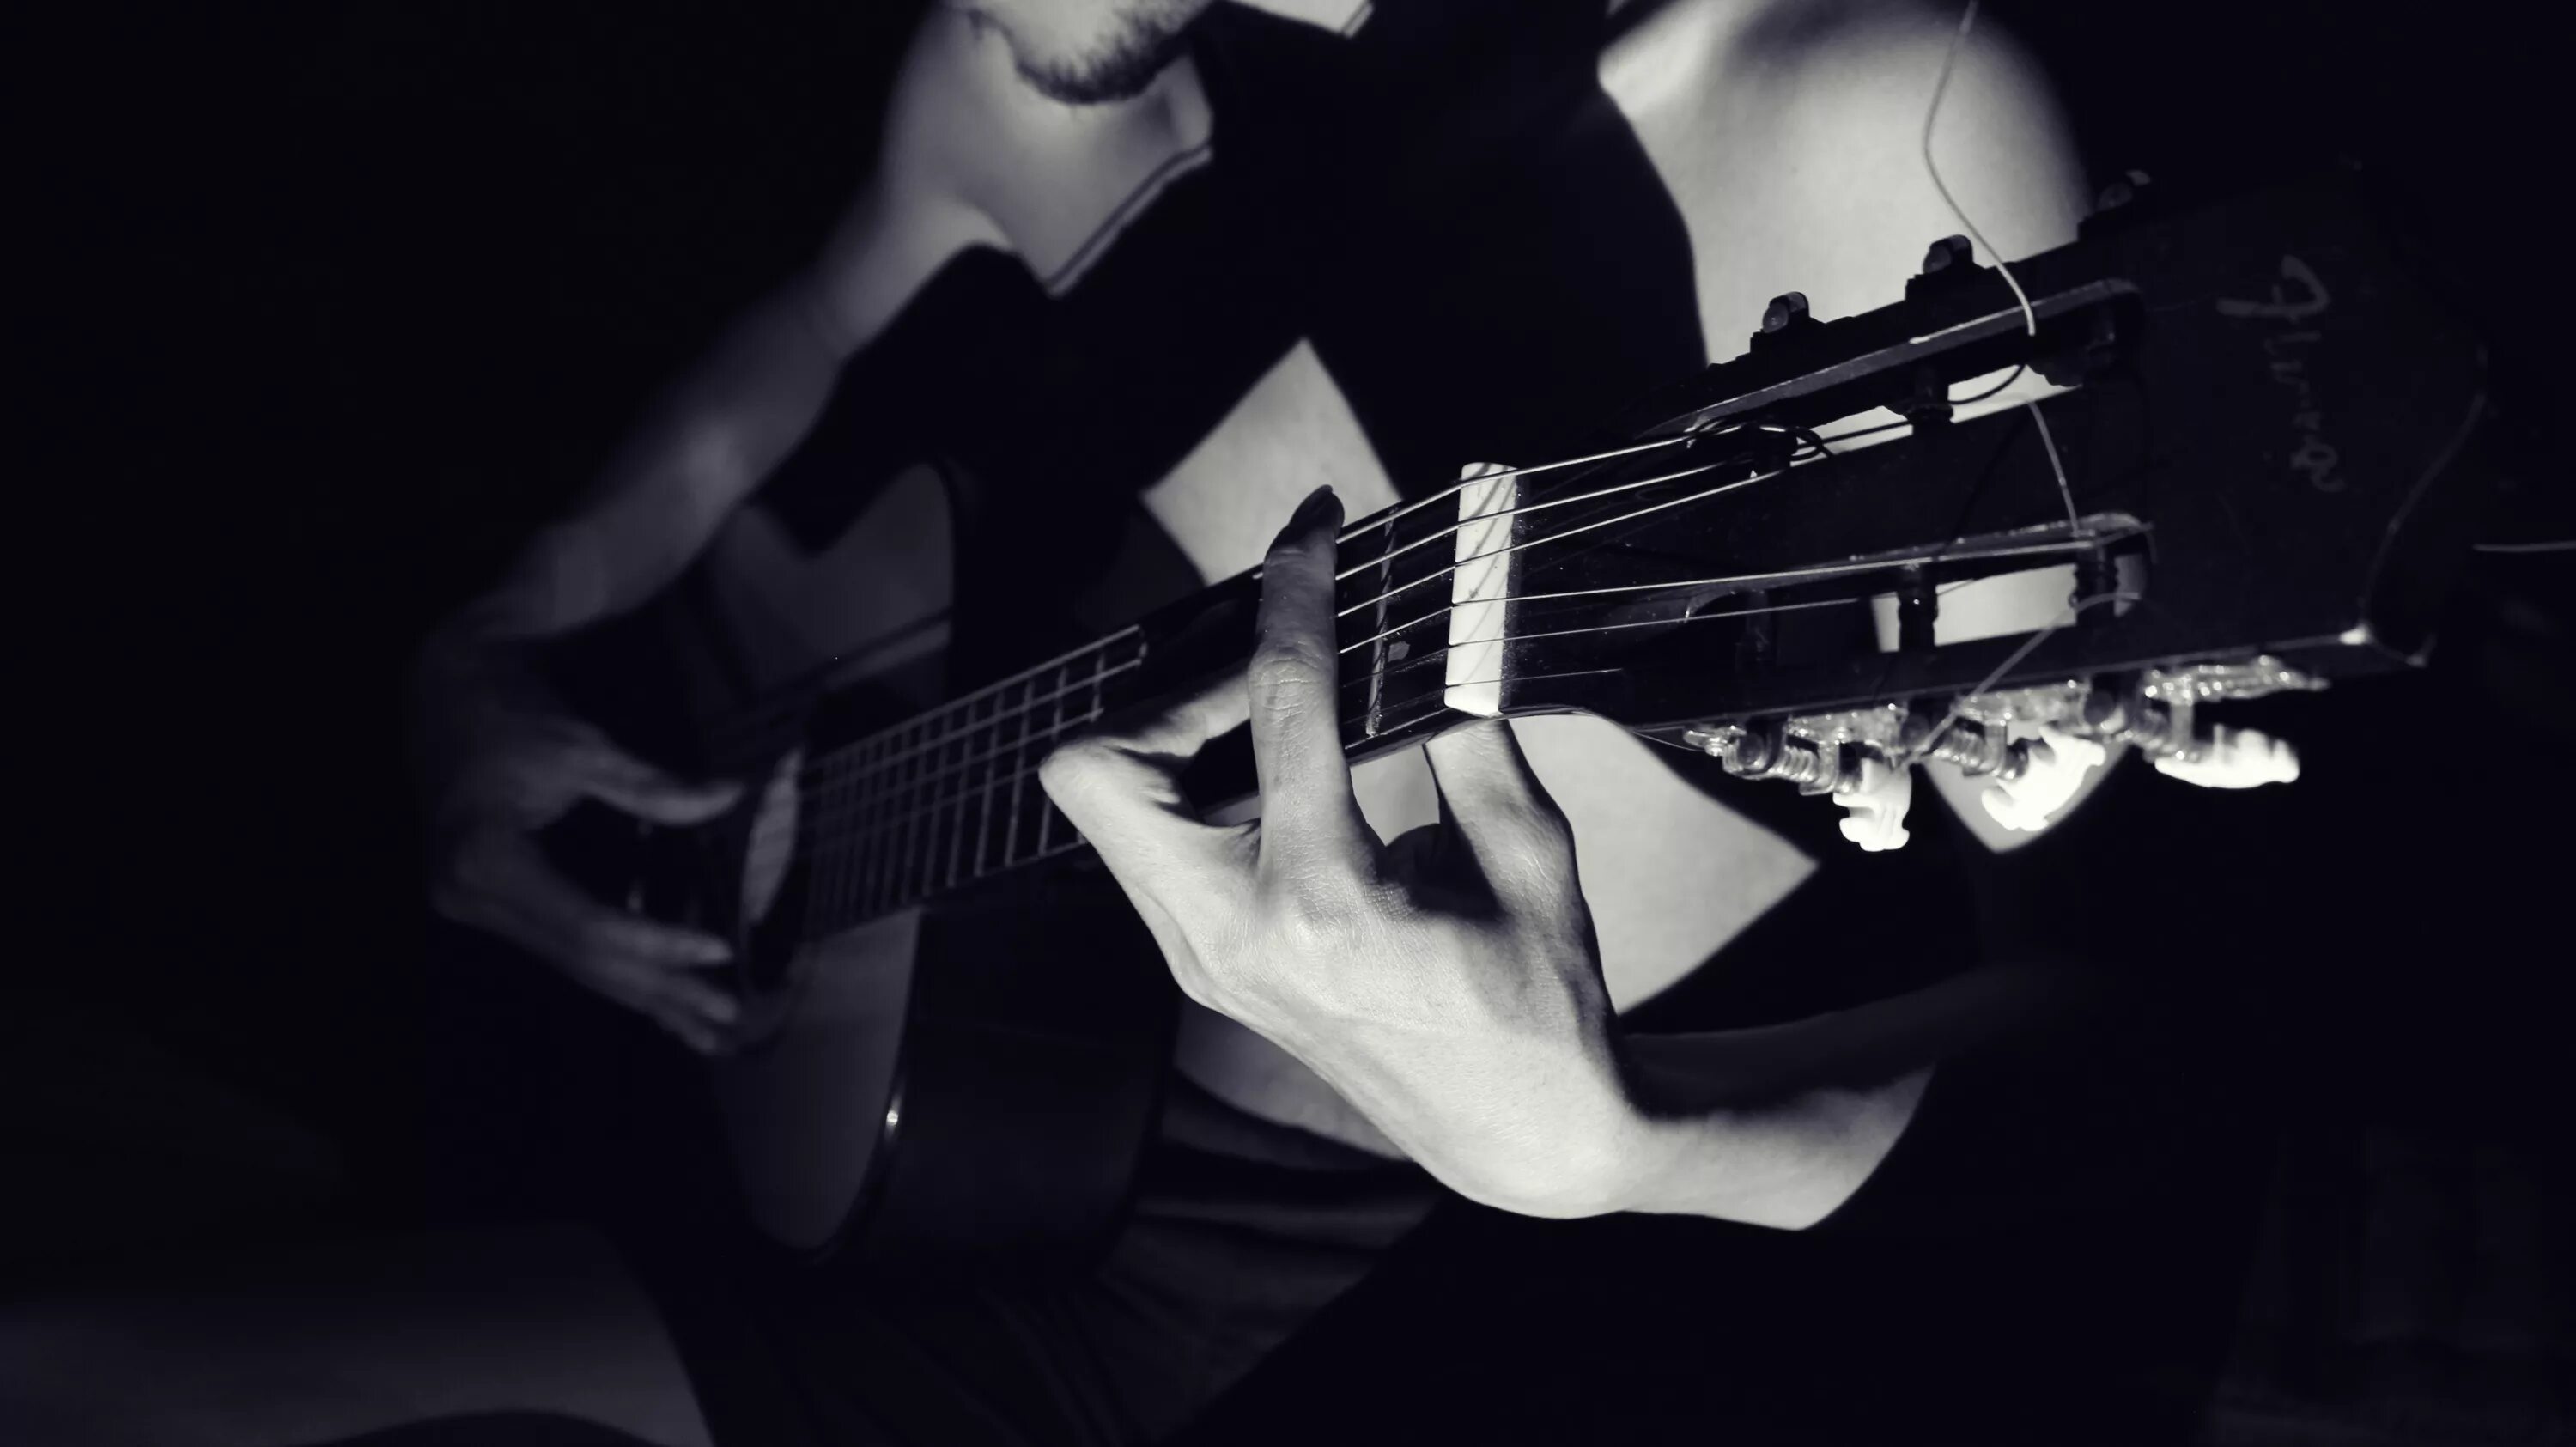 Песни на гитаре мужчина. С гитарой в темноте. Мужчина с гитарой. Человек с гитарой в темноте. Гитара картинки.